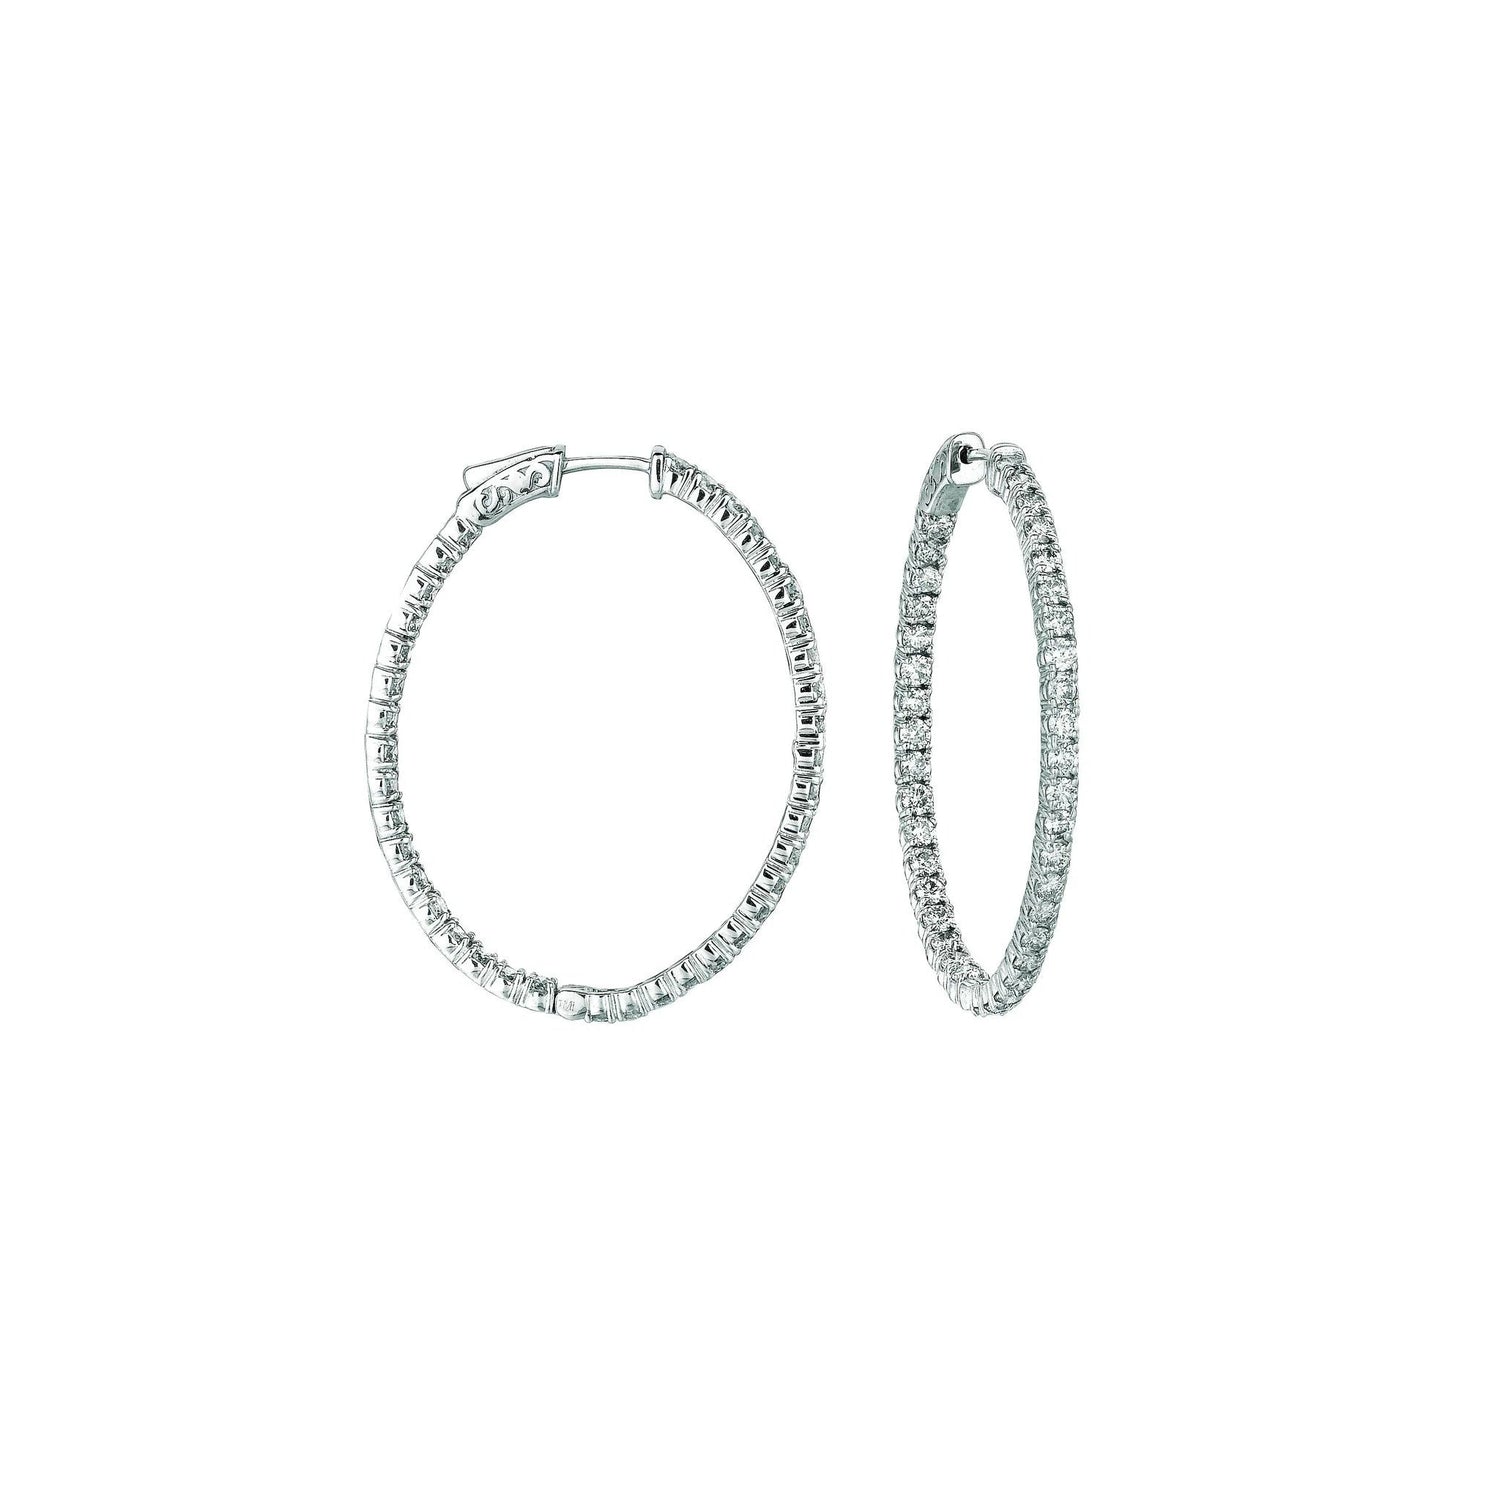 Ovale Creolen mit 7 Zeigern 5,46 Karat Echt Diamant 14K Weiß